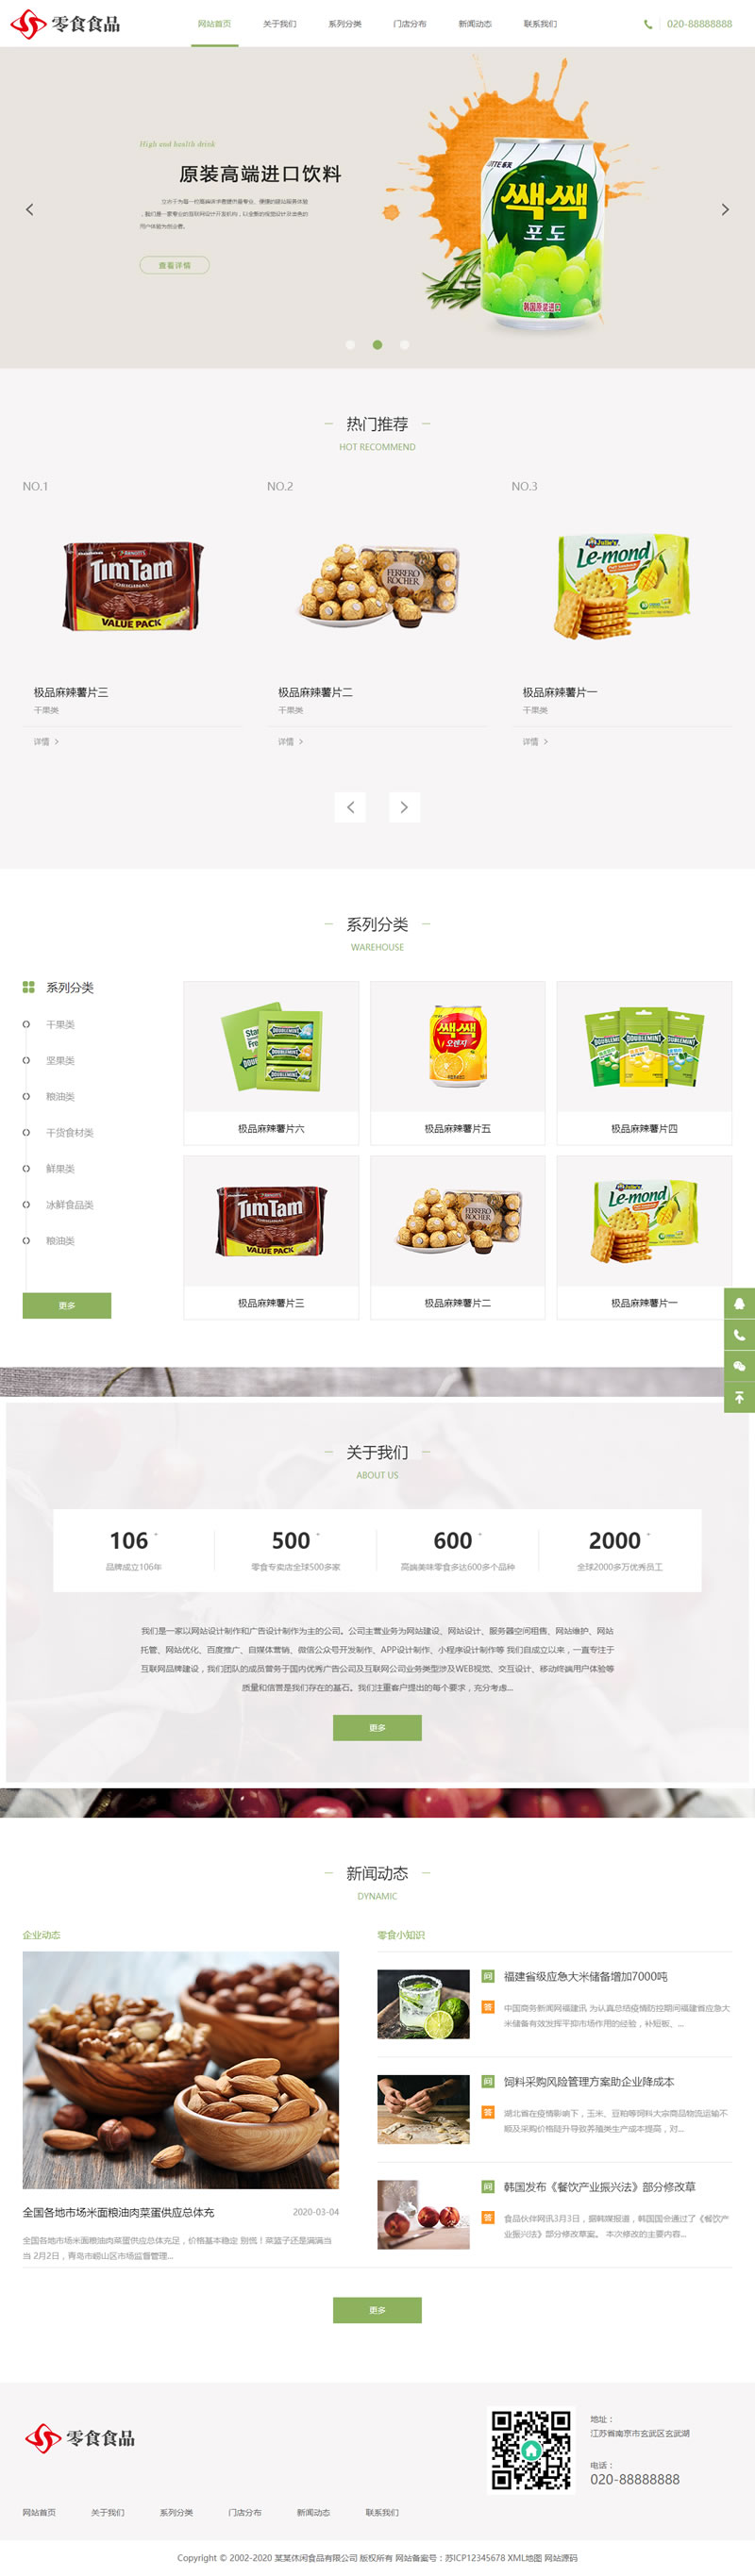 (自适应手机版)响应式日化食品零食类网站源码 HTML5零食连锁加盟店网站织梦模板